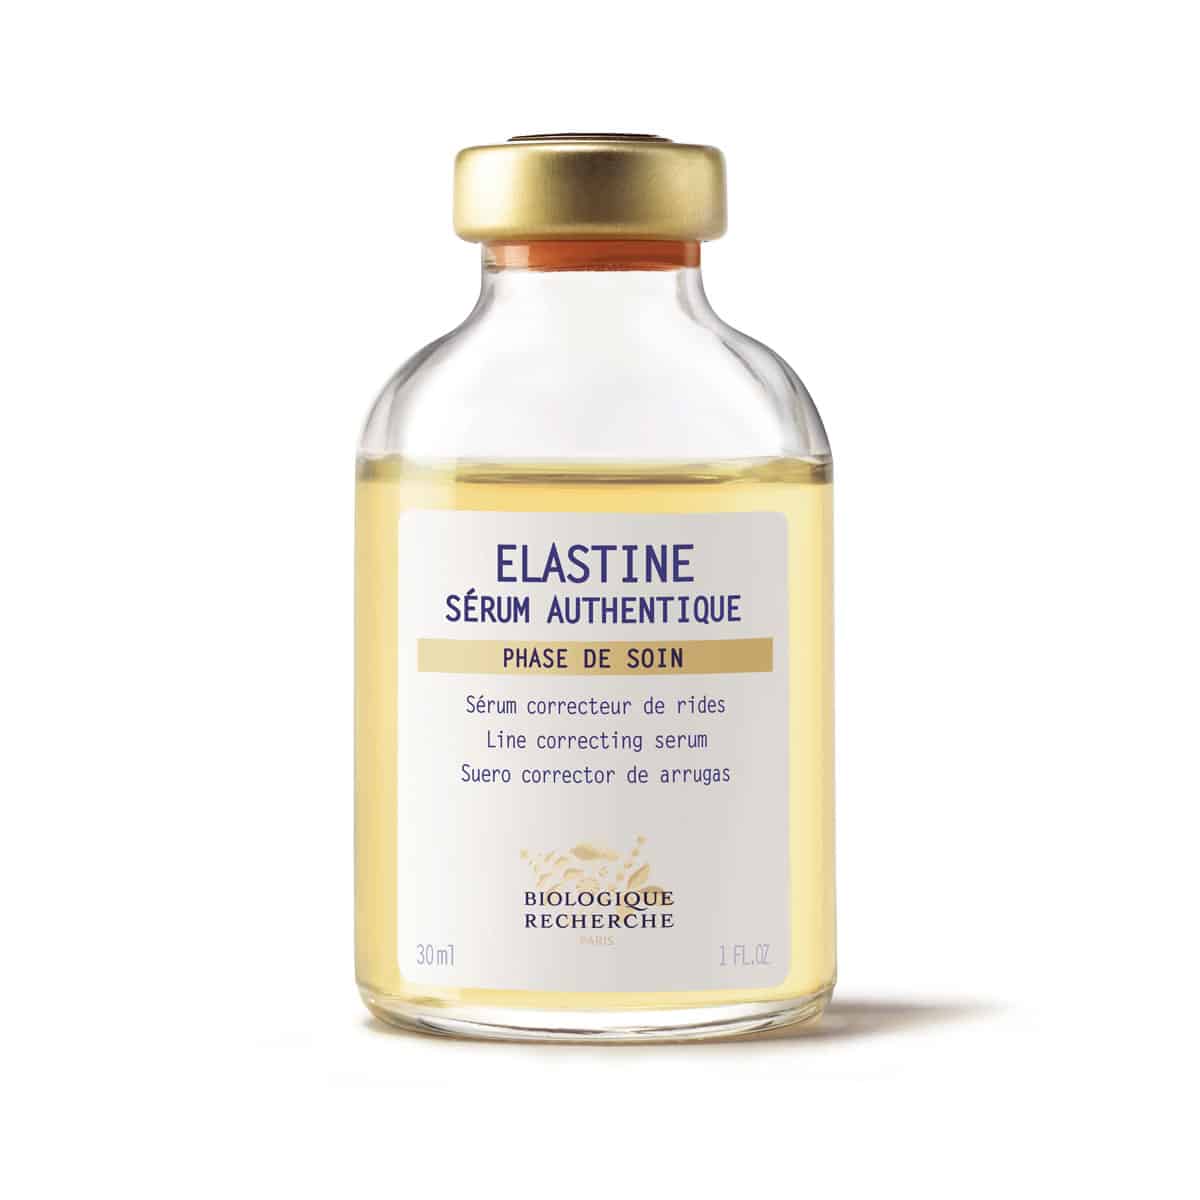 Serum Elastine Anti Wrinkle